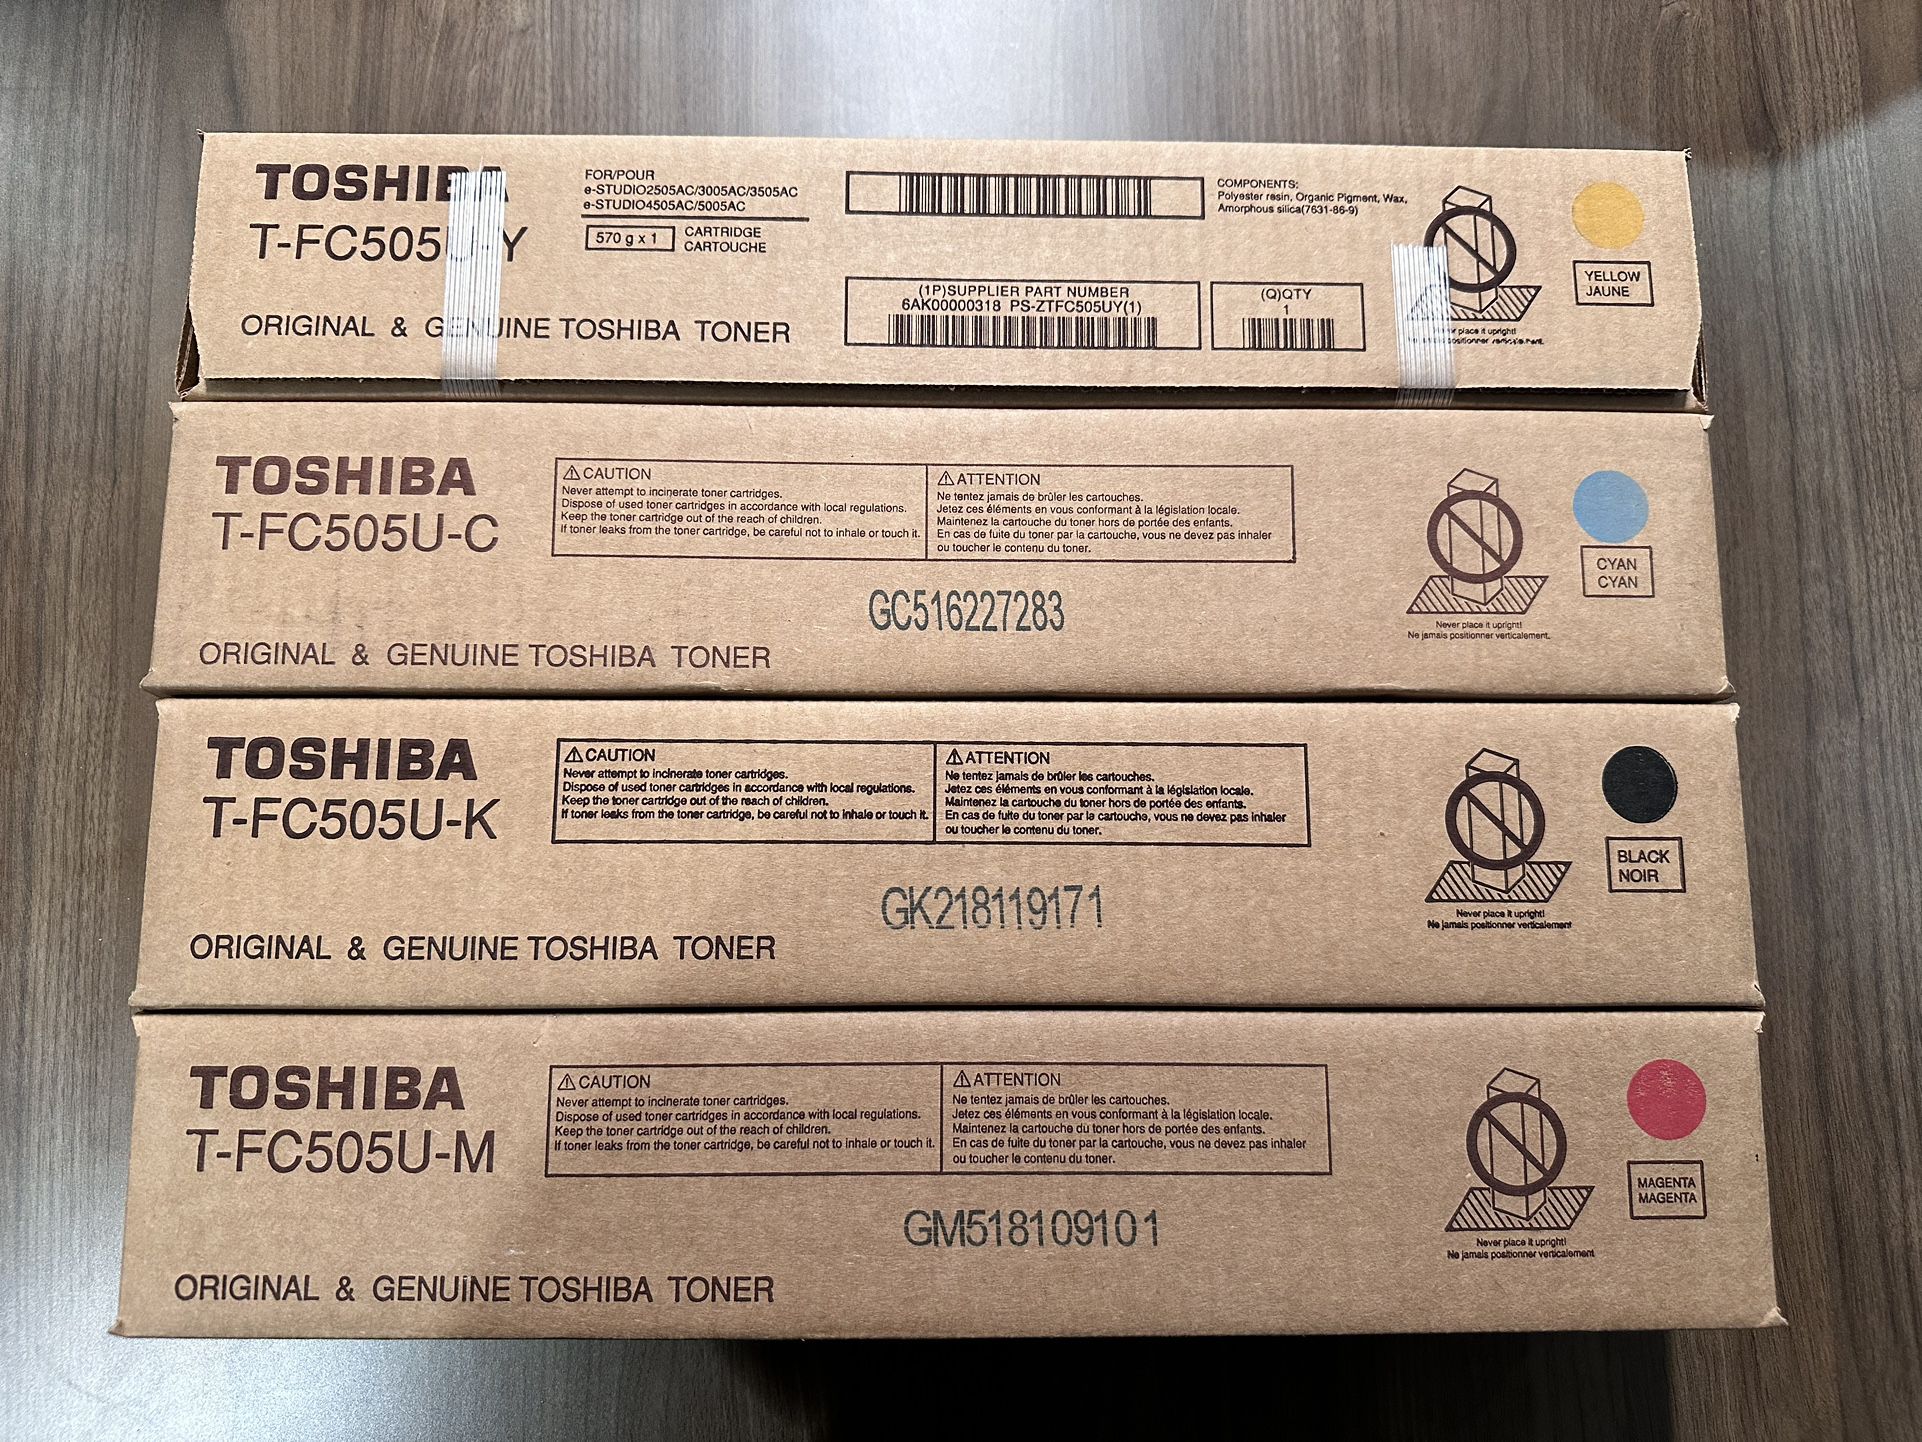 Toshiba T-FC505U-Y, T-FC505U-C, T-FC505U-K, T-FC505U-M, TB-FC505